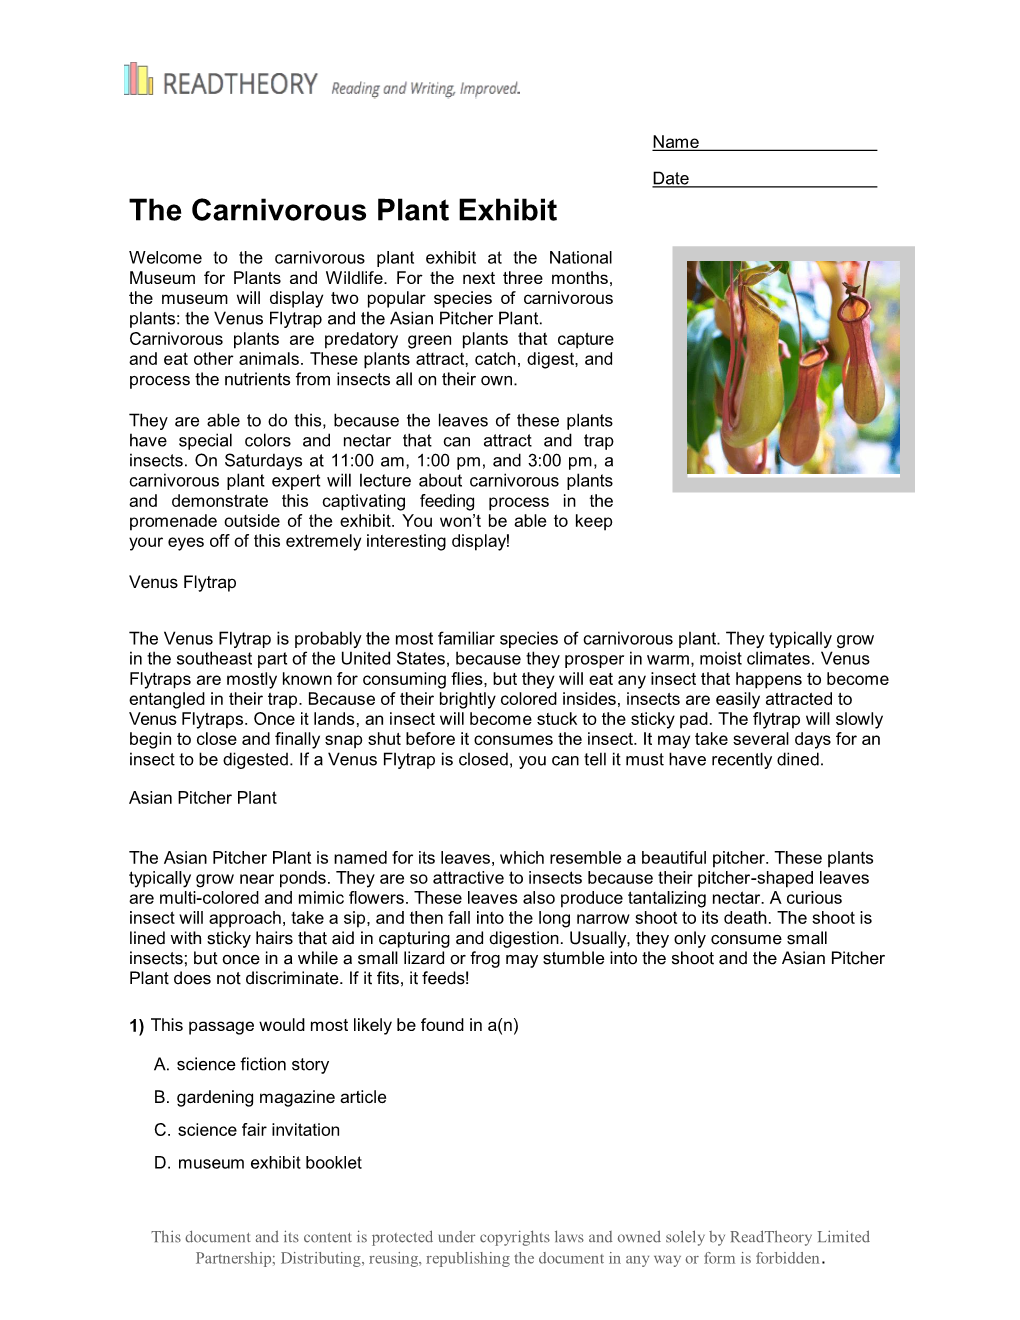 The Carnivorous Plant Exhibit